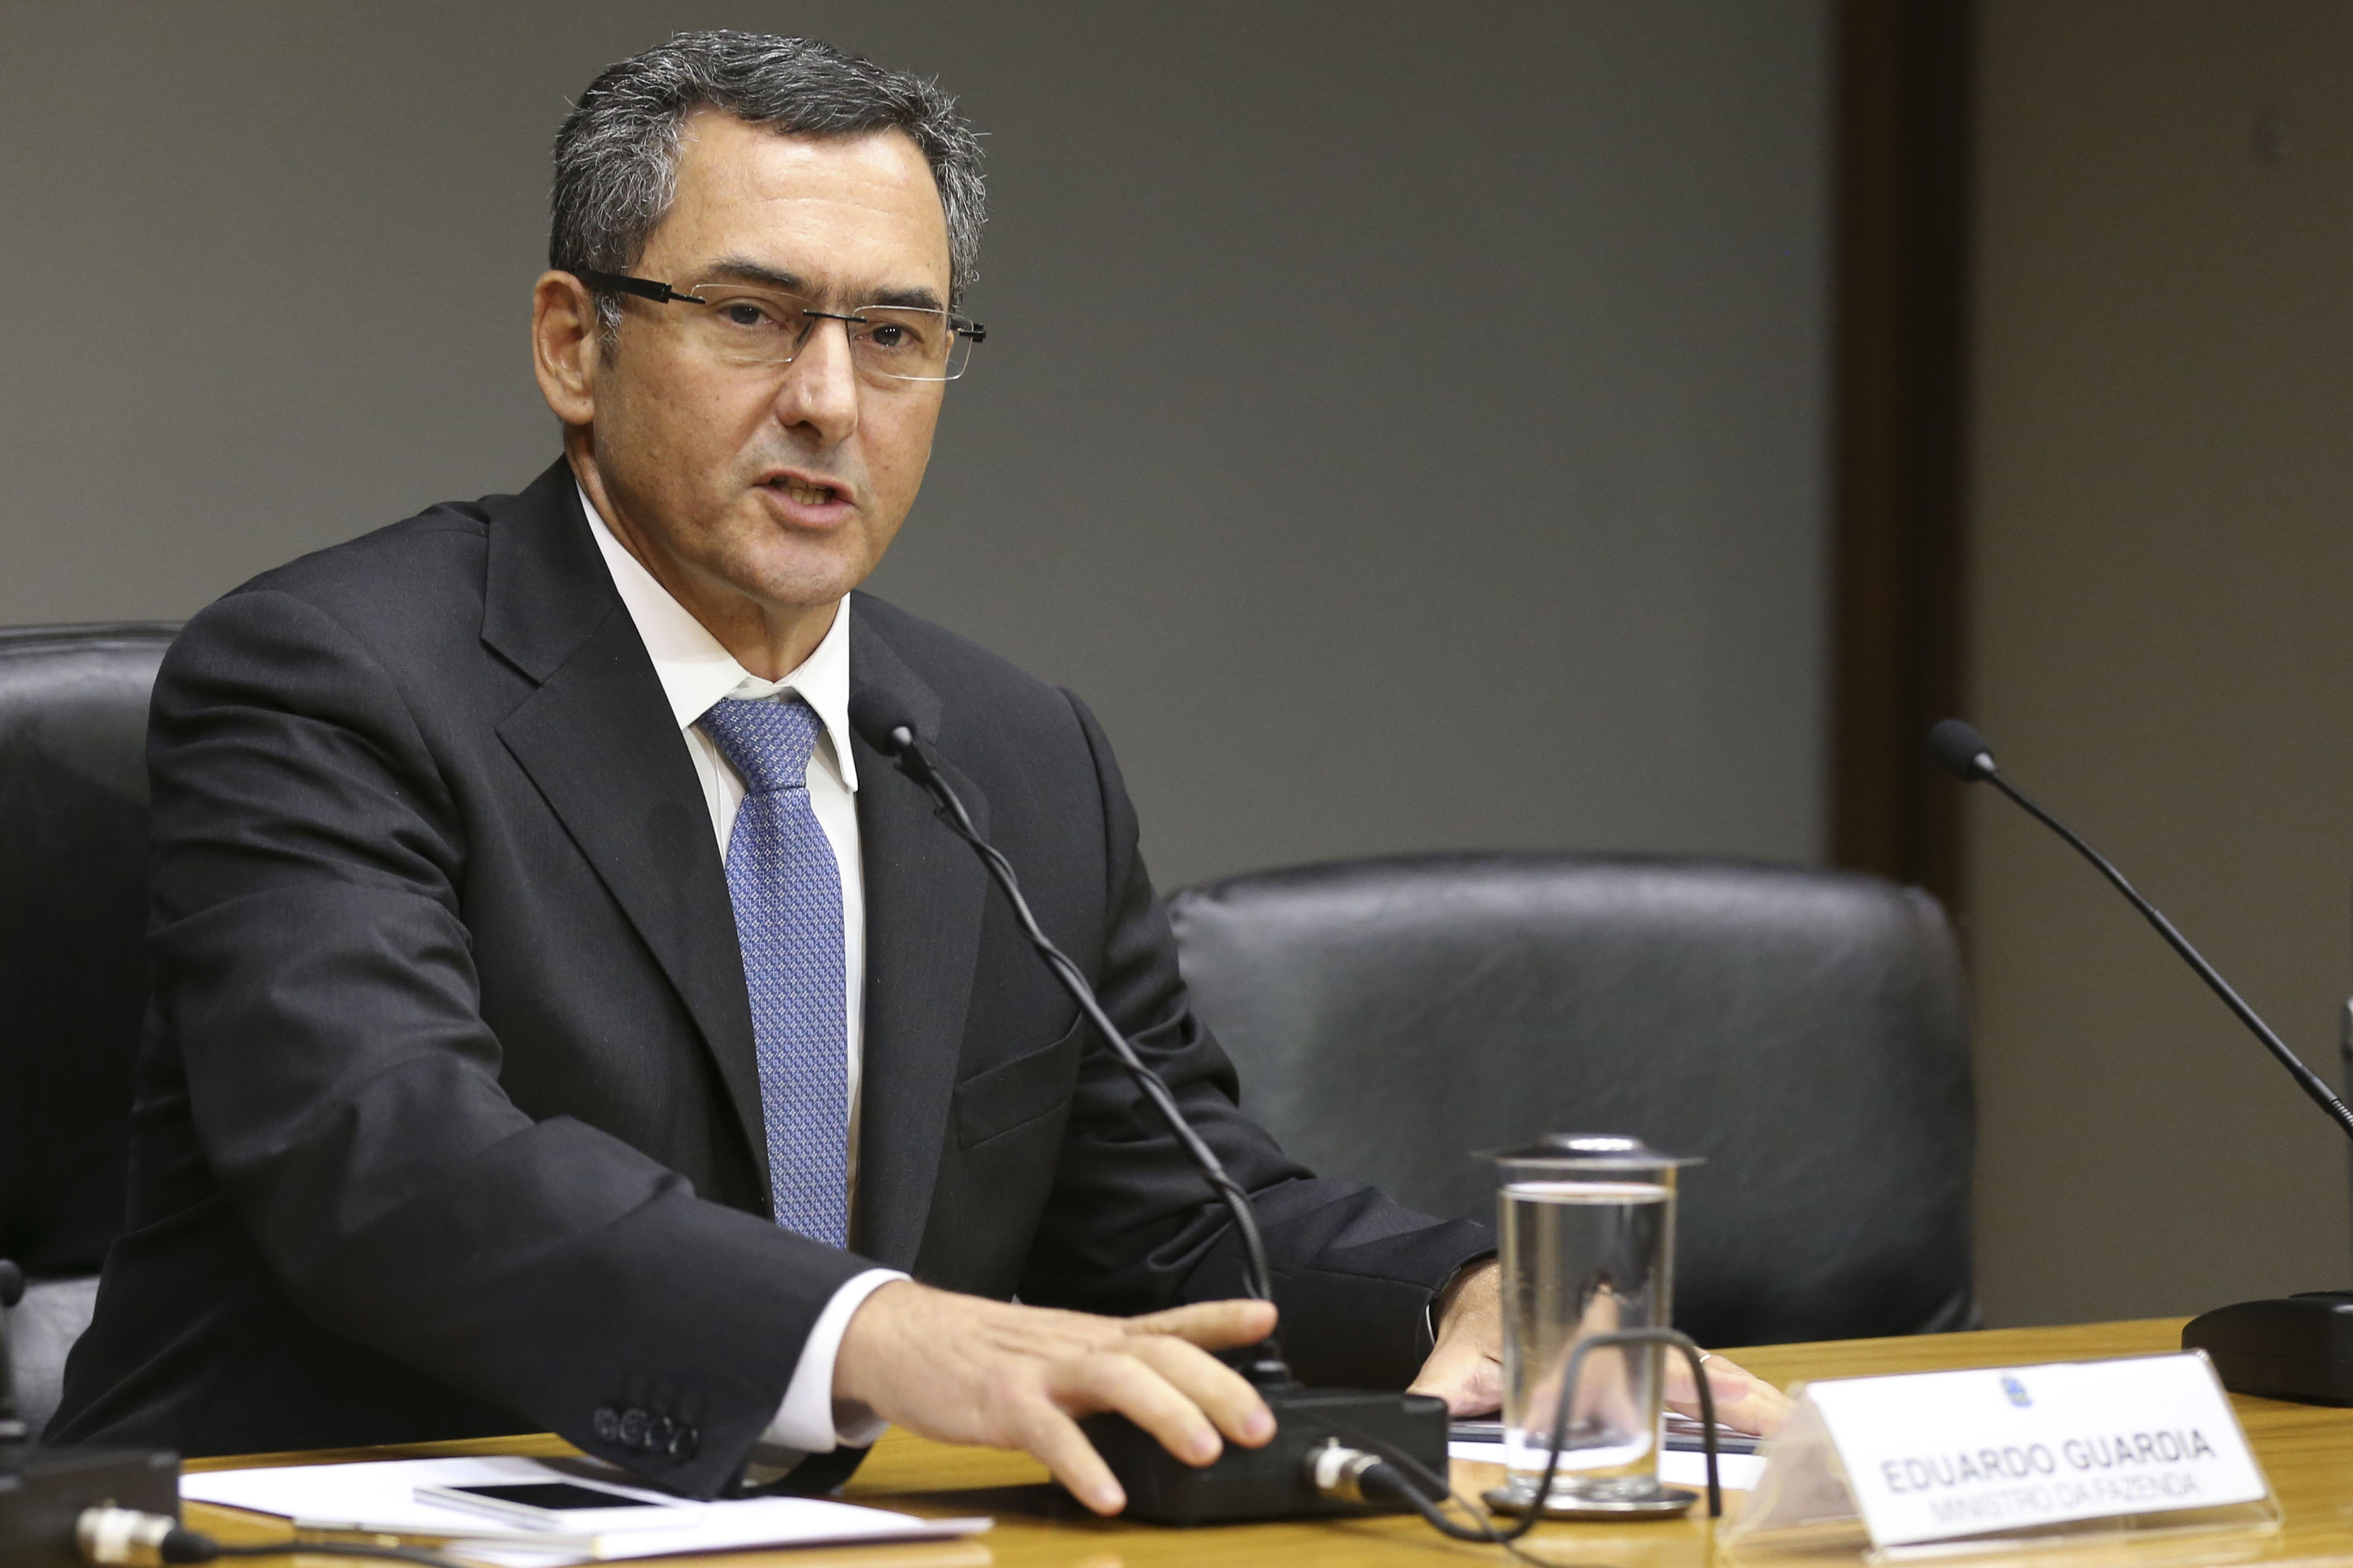 Guardia envia proposta de reformas tributárias a Guedes